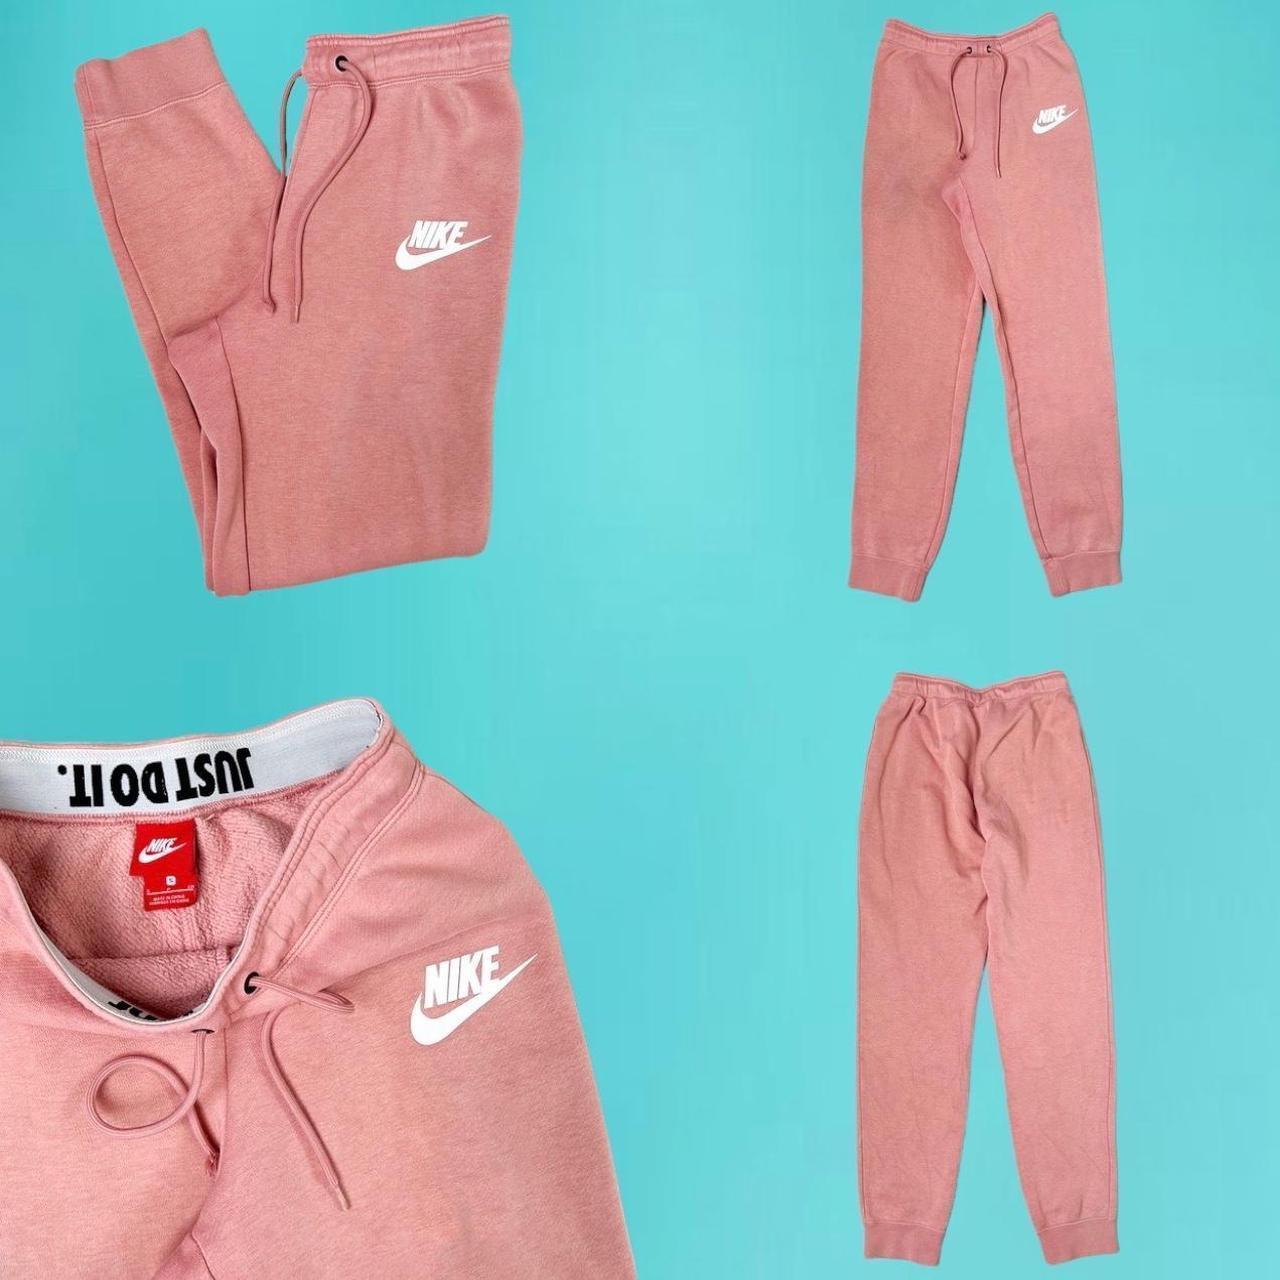 Vintage Nike sweatpants Vintage pink Nike - Depop